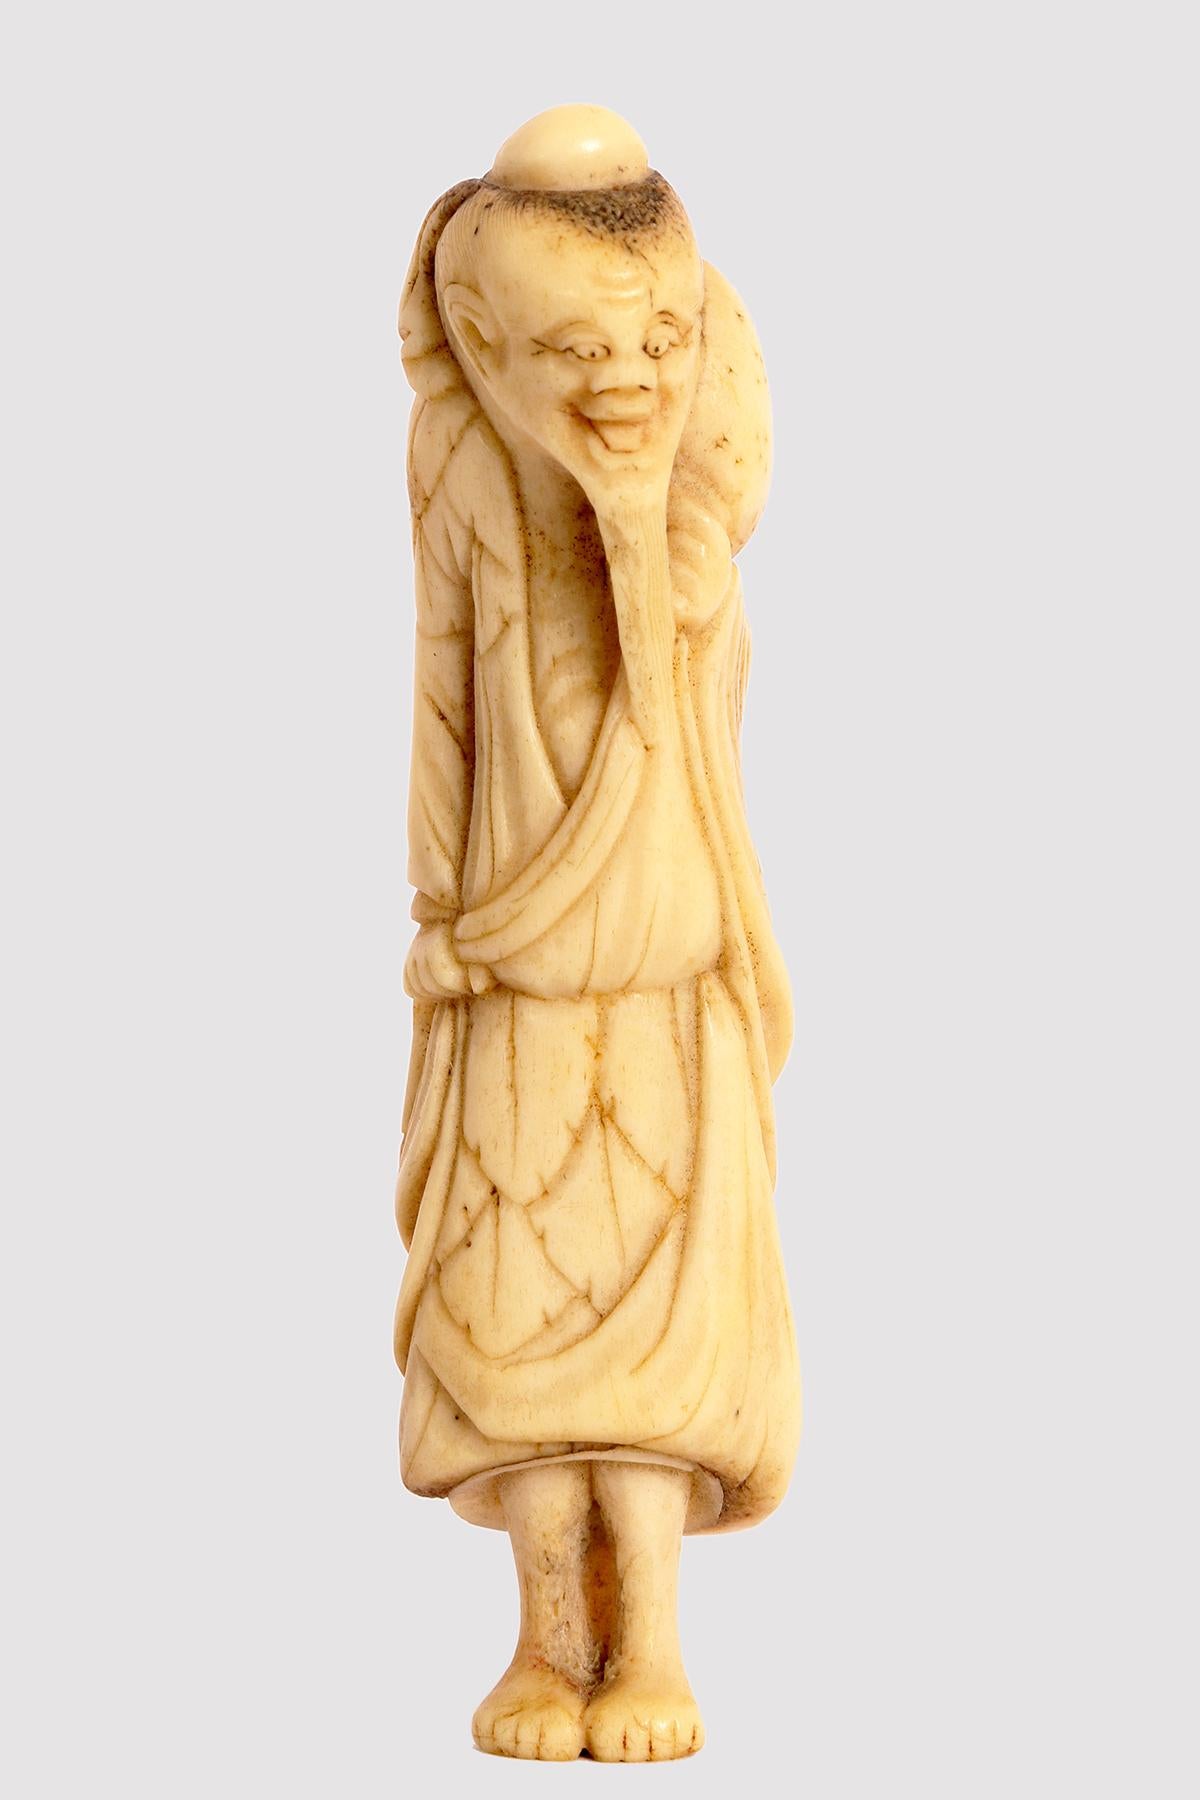 Netzuke aus geschnitztem Knochen, der einen weisen alten Reisenden mit langem Bart darstellt und in ein reiches Gewand gehüllt ist.
Auf der Schulter befindet sich eine getrocknete Kalebasse, um Wasser zu transportieren. Japan, Edo-Zeit (1603-1868),